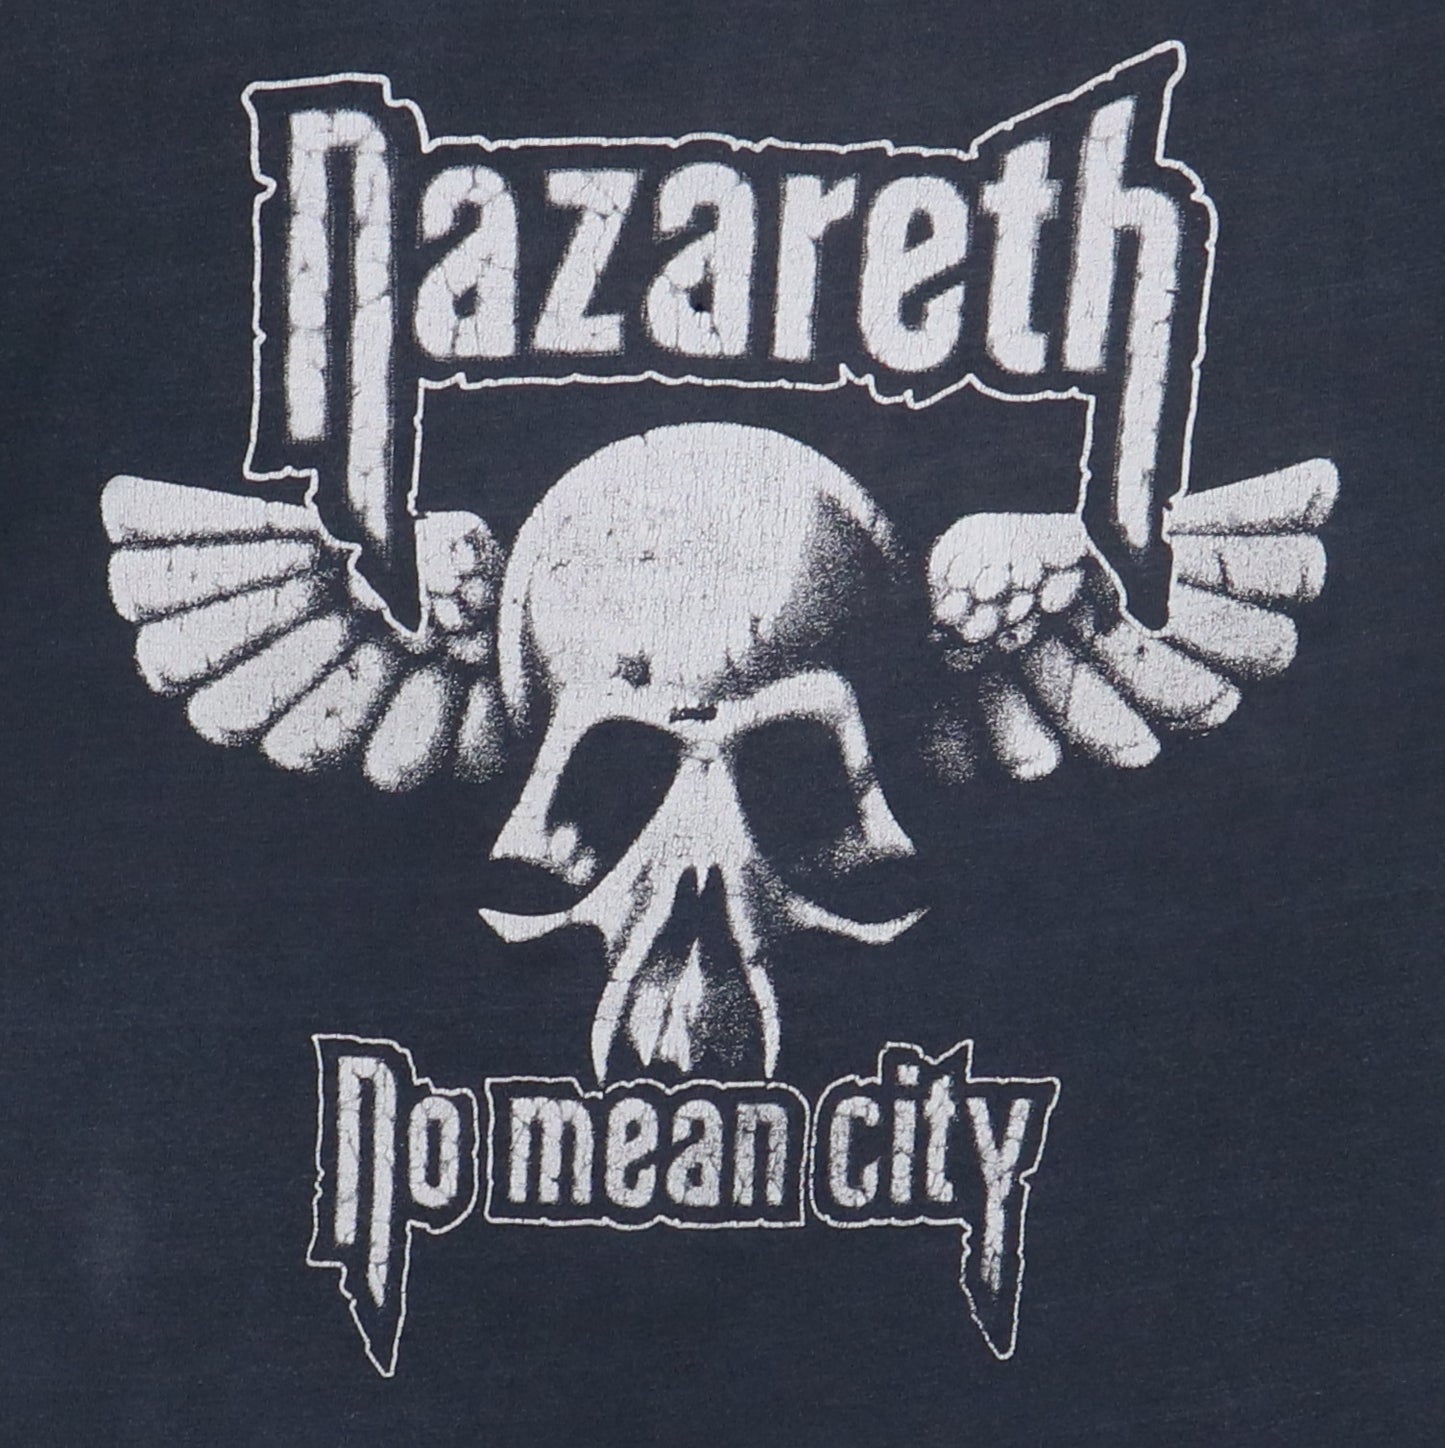 1979 Nazarath No Mean City Shirt